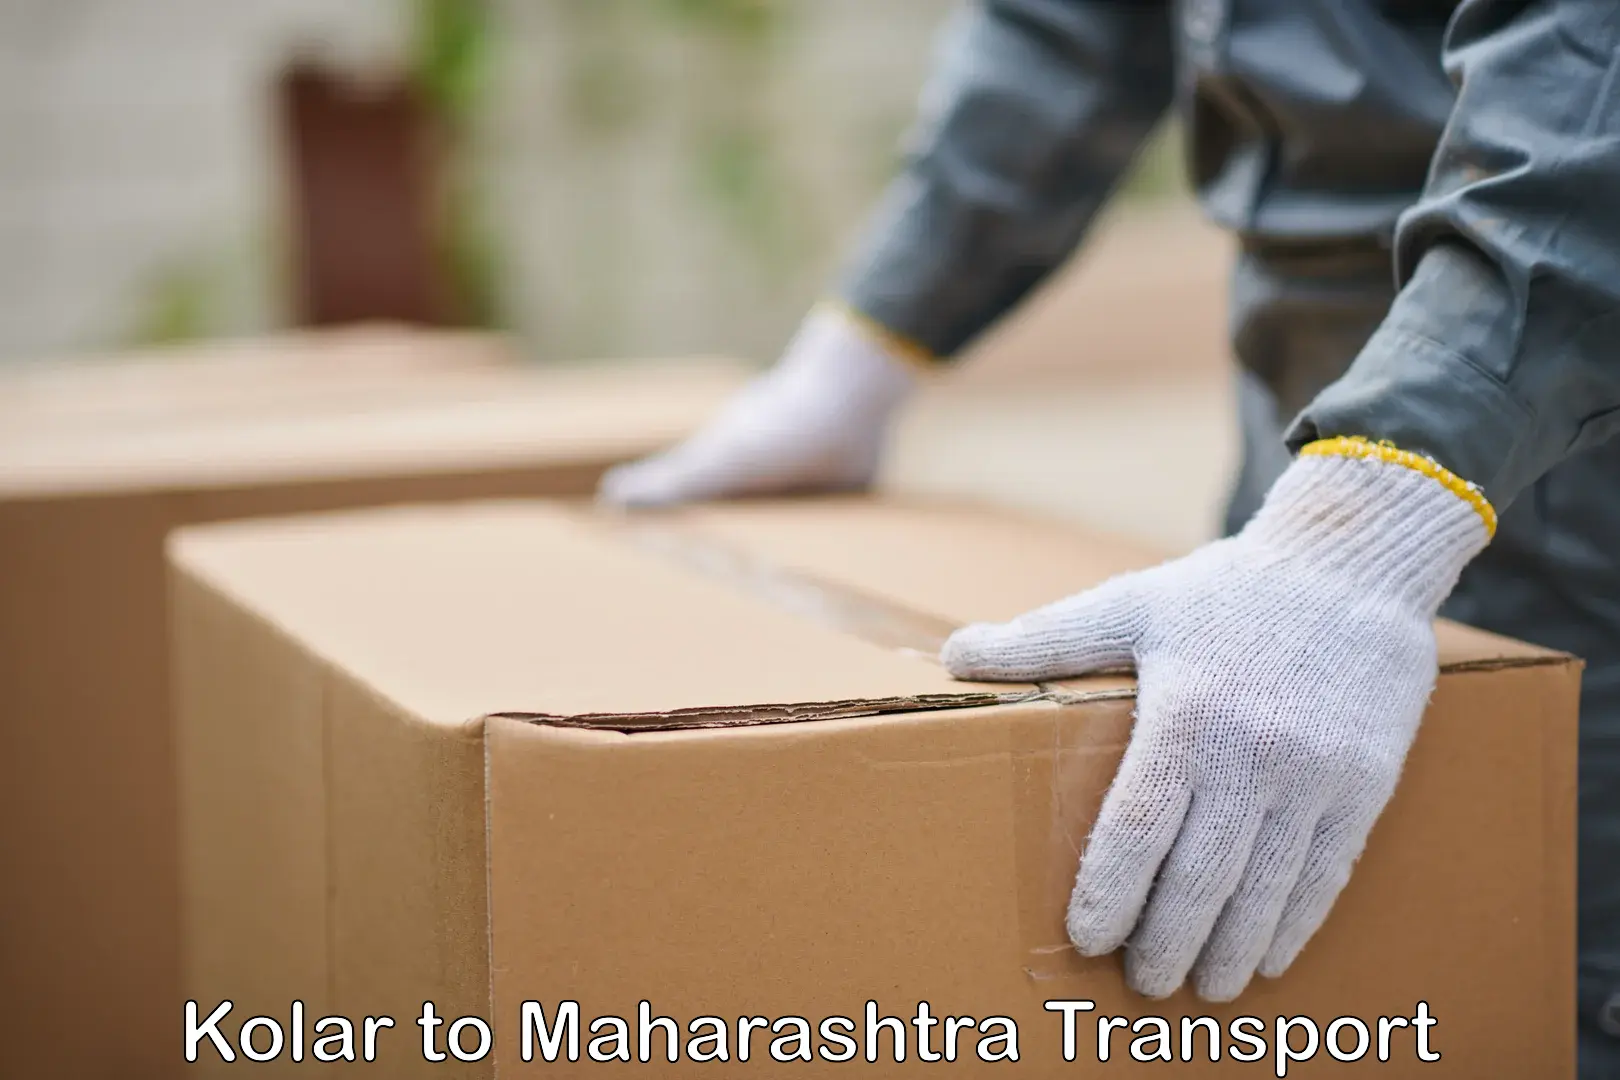 All India transport service Kolar to Maharashtra